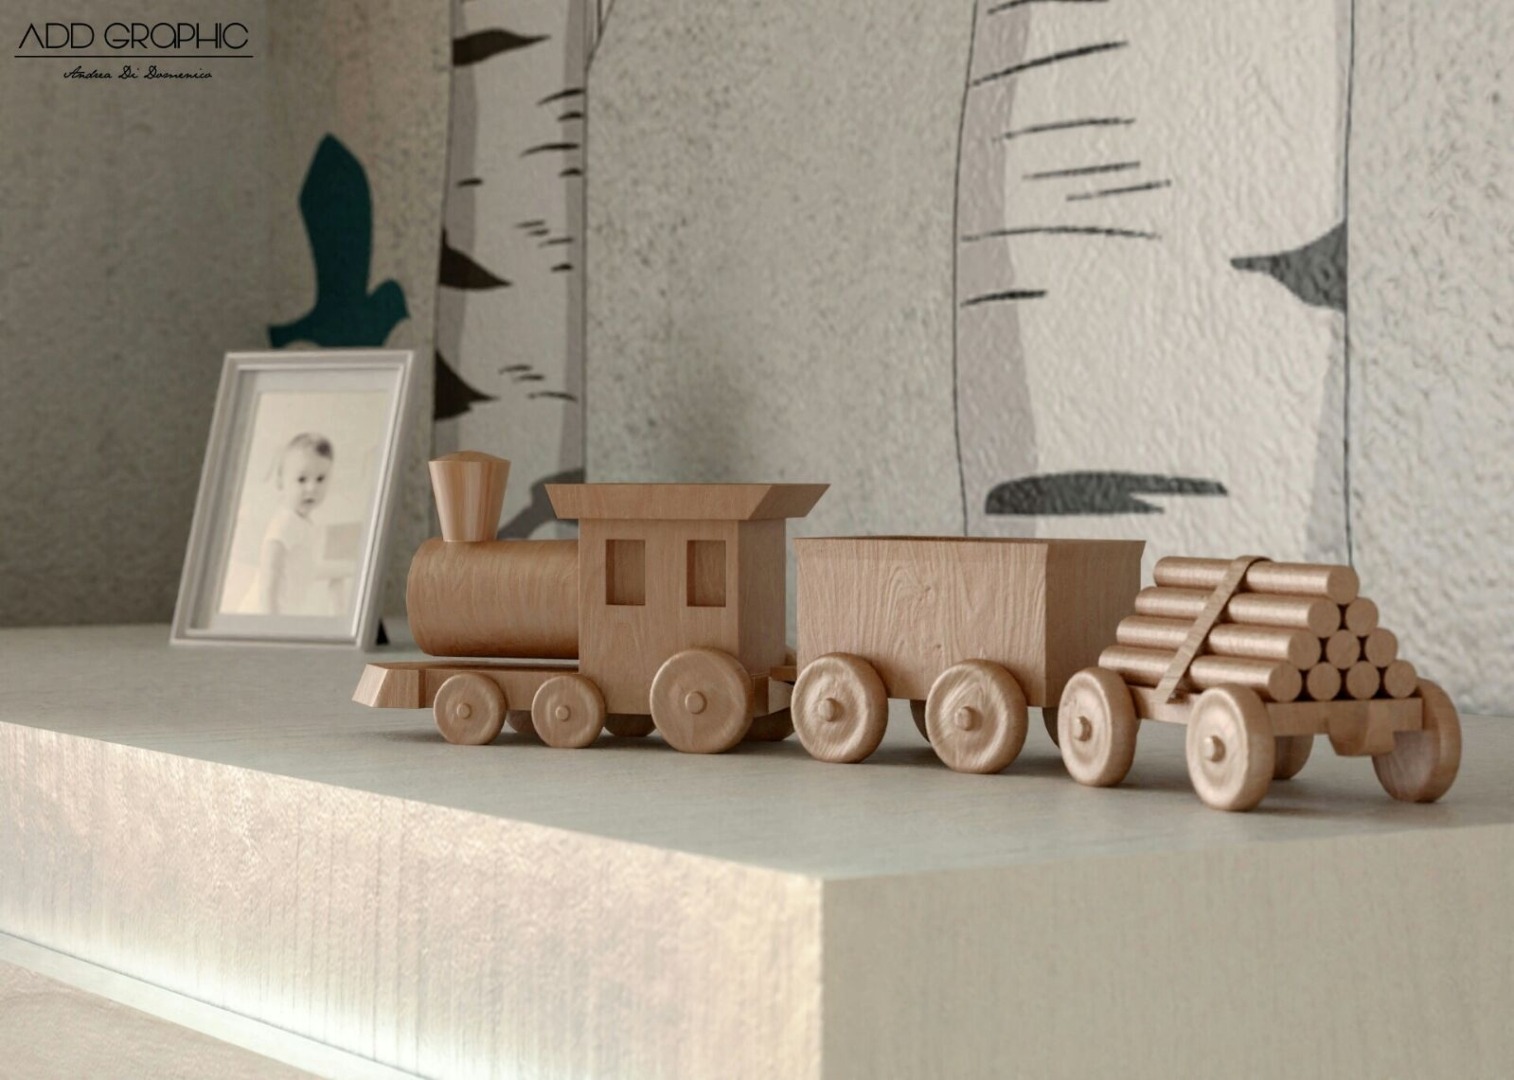 wooden-train